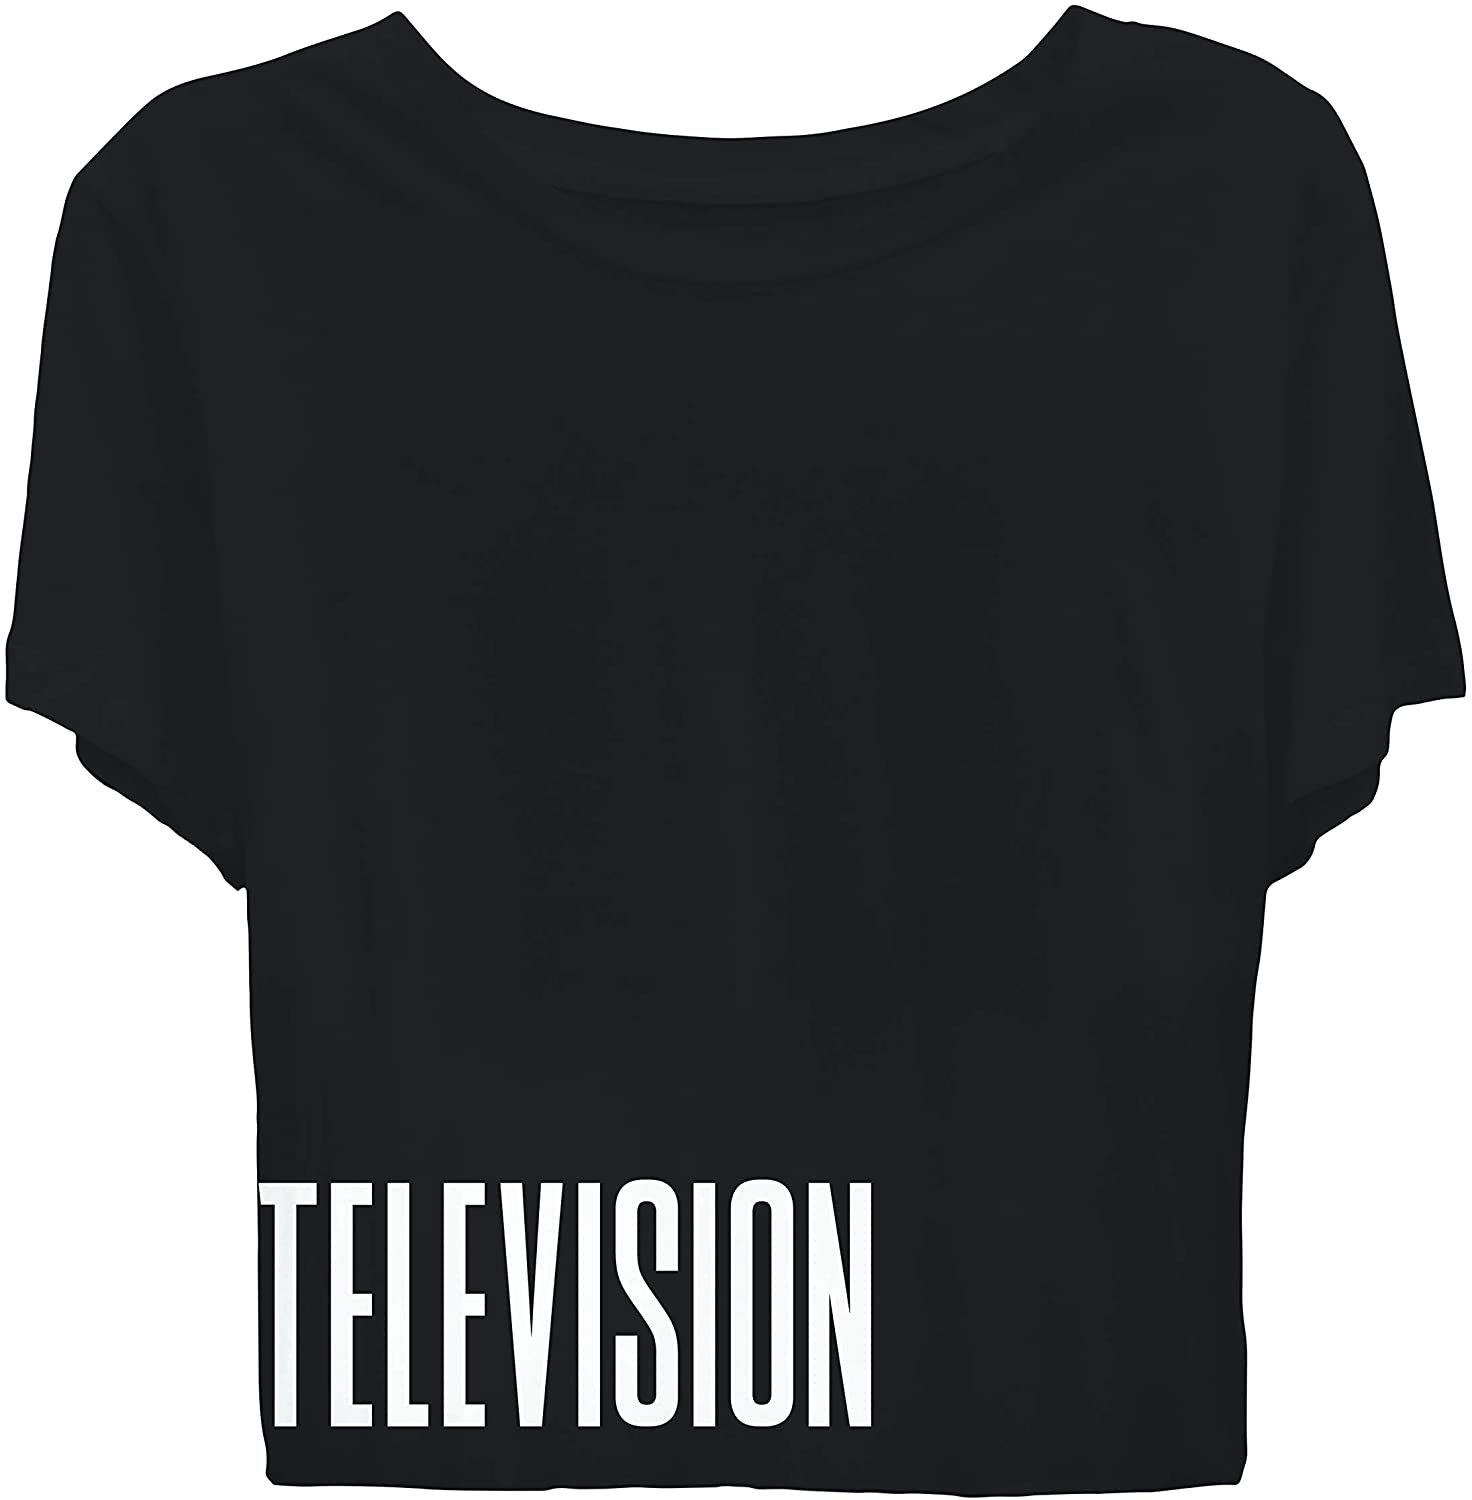 MTV Ladies Short Sleeve Shirt - #TBT Ladies 1980's Clothing - I Want My Logo Cropped Short Sleeve Tee Black, Medium - image 3 of 3